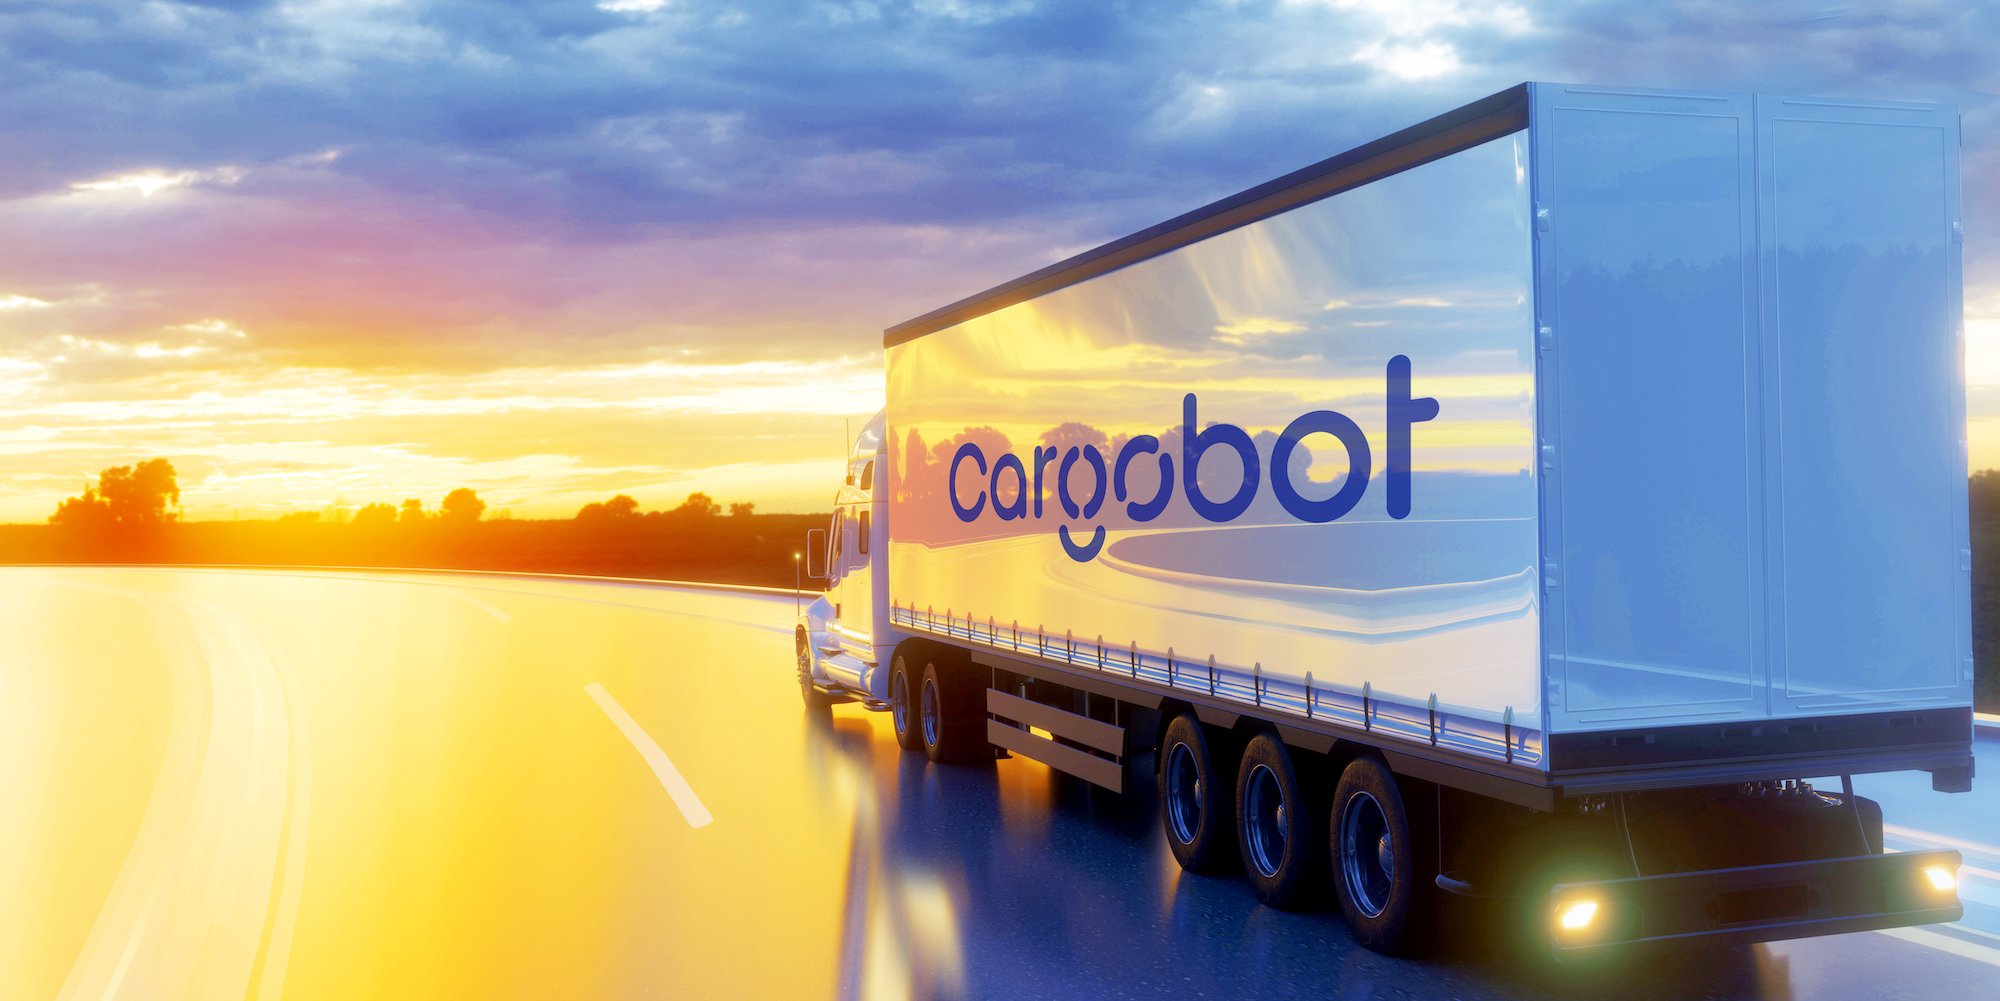 Cargobot Truck Sunset